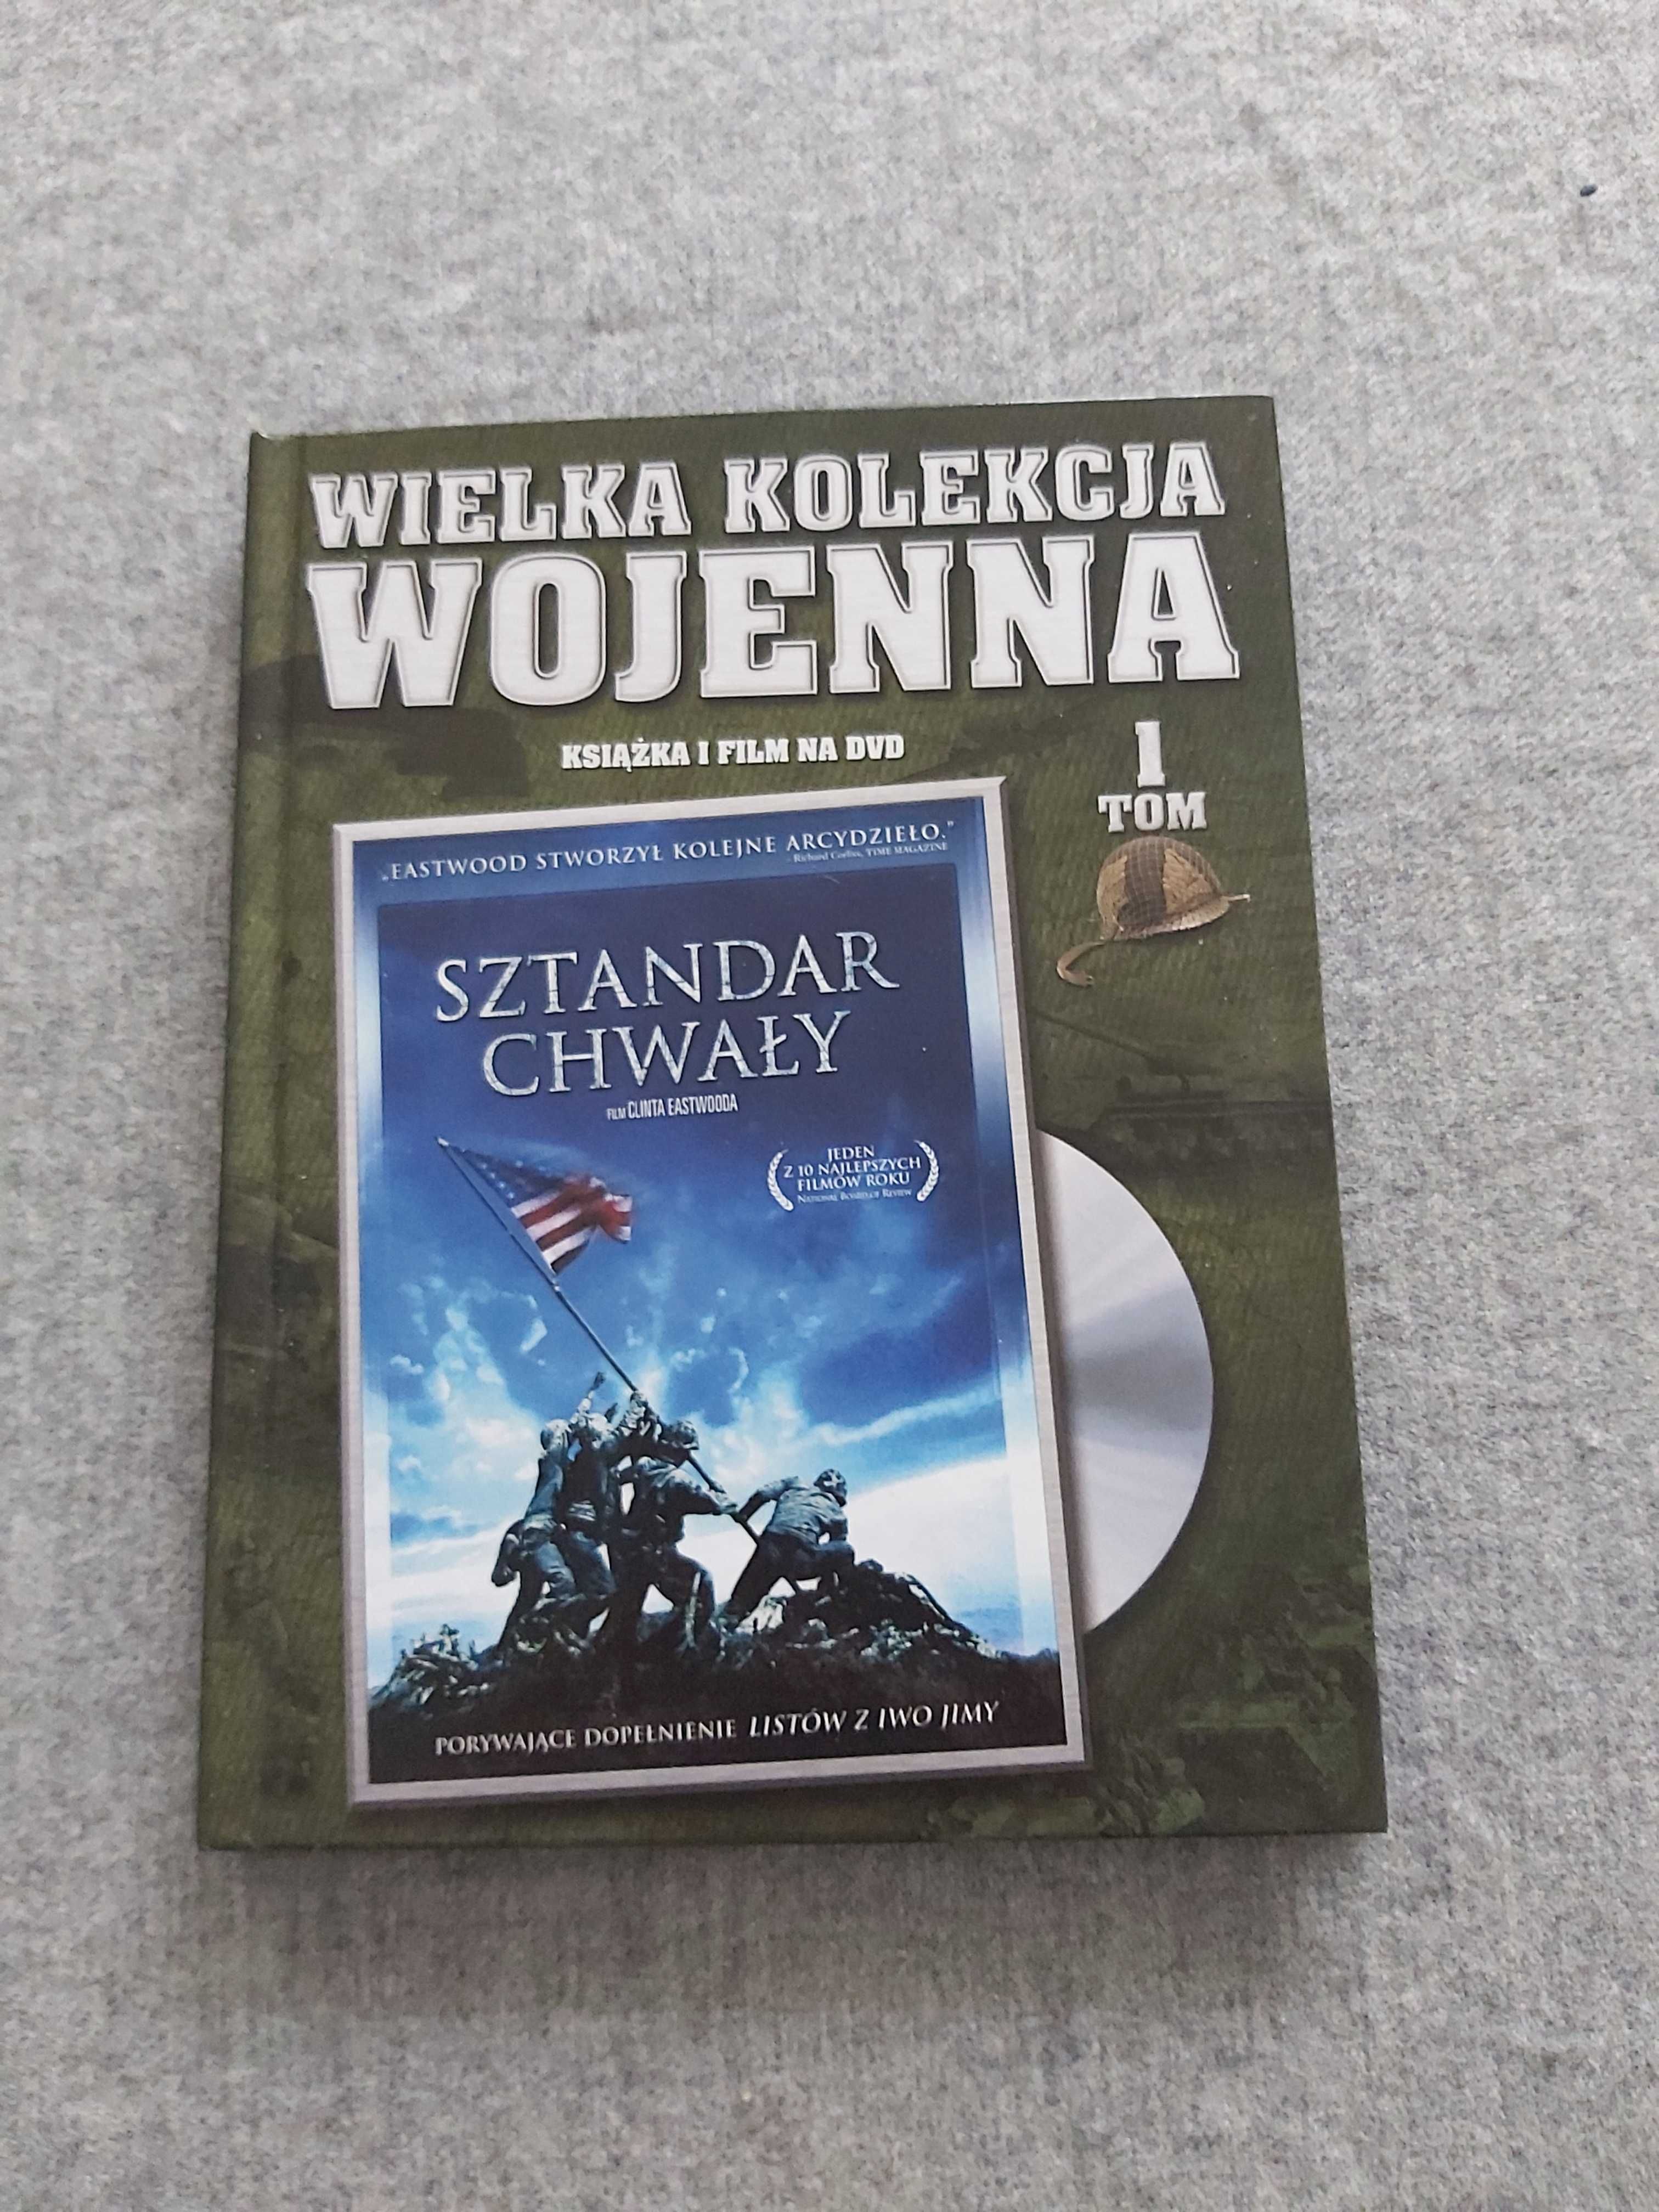 Wielka kolekcja wojenna książka i film DVD tom 1 w b. dobrym stanie